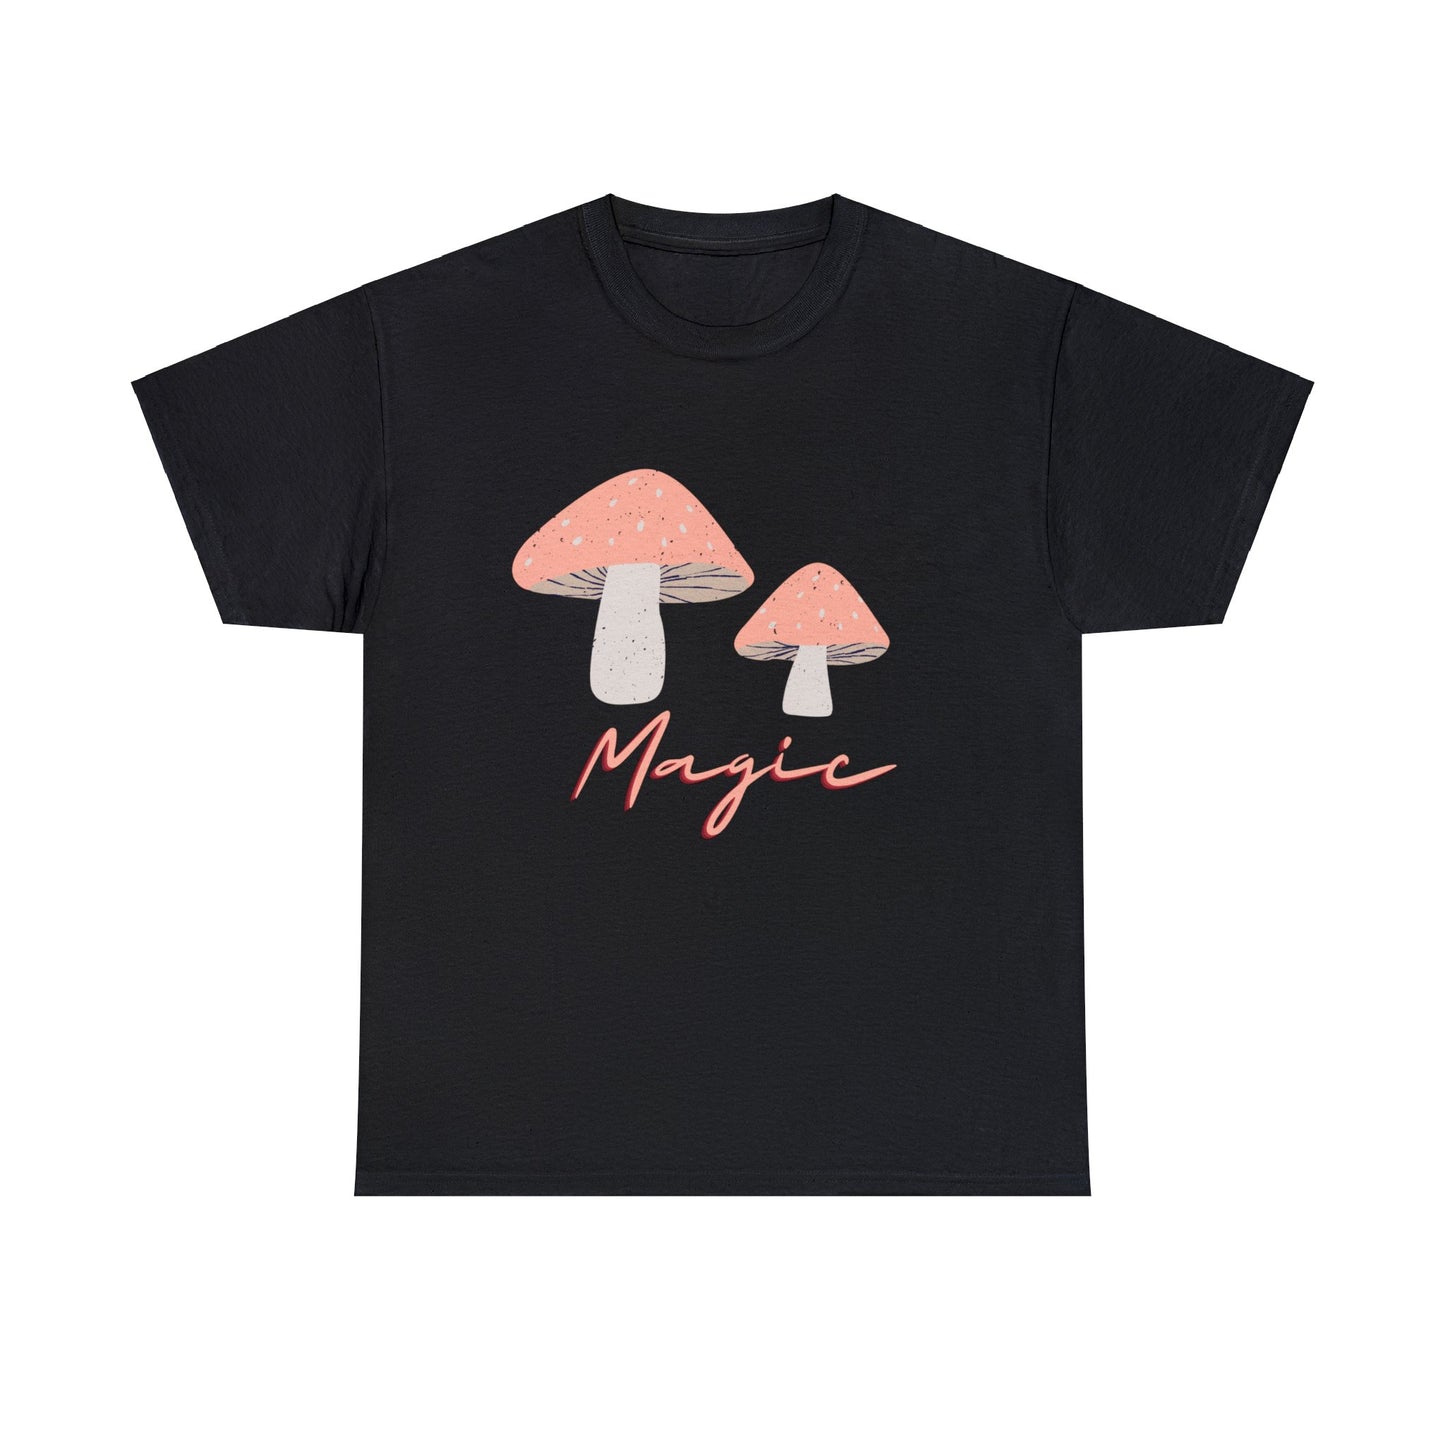 Magical Mushrooms Tshirt by Queen Midas